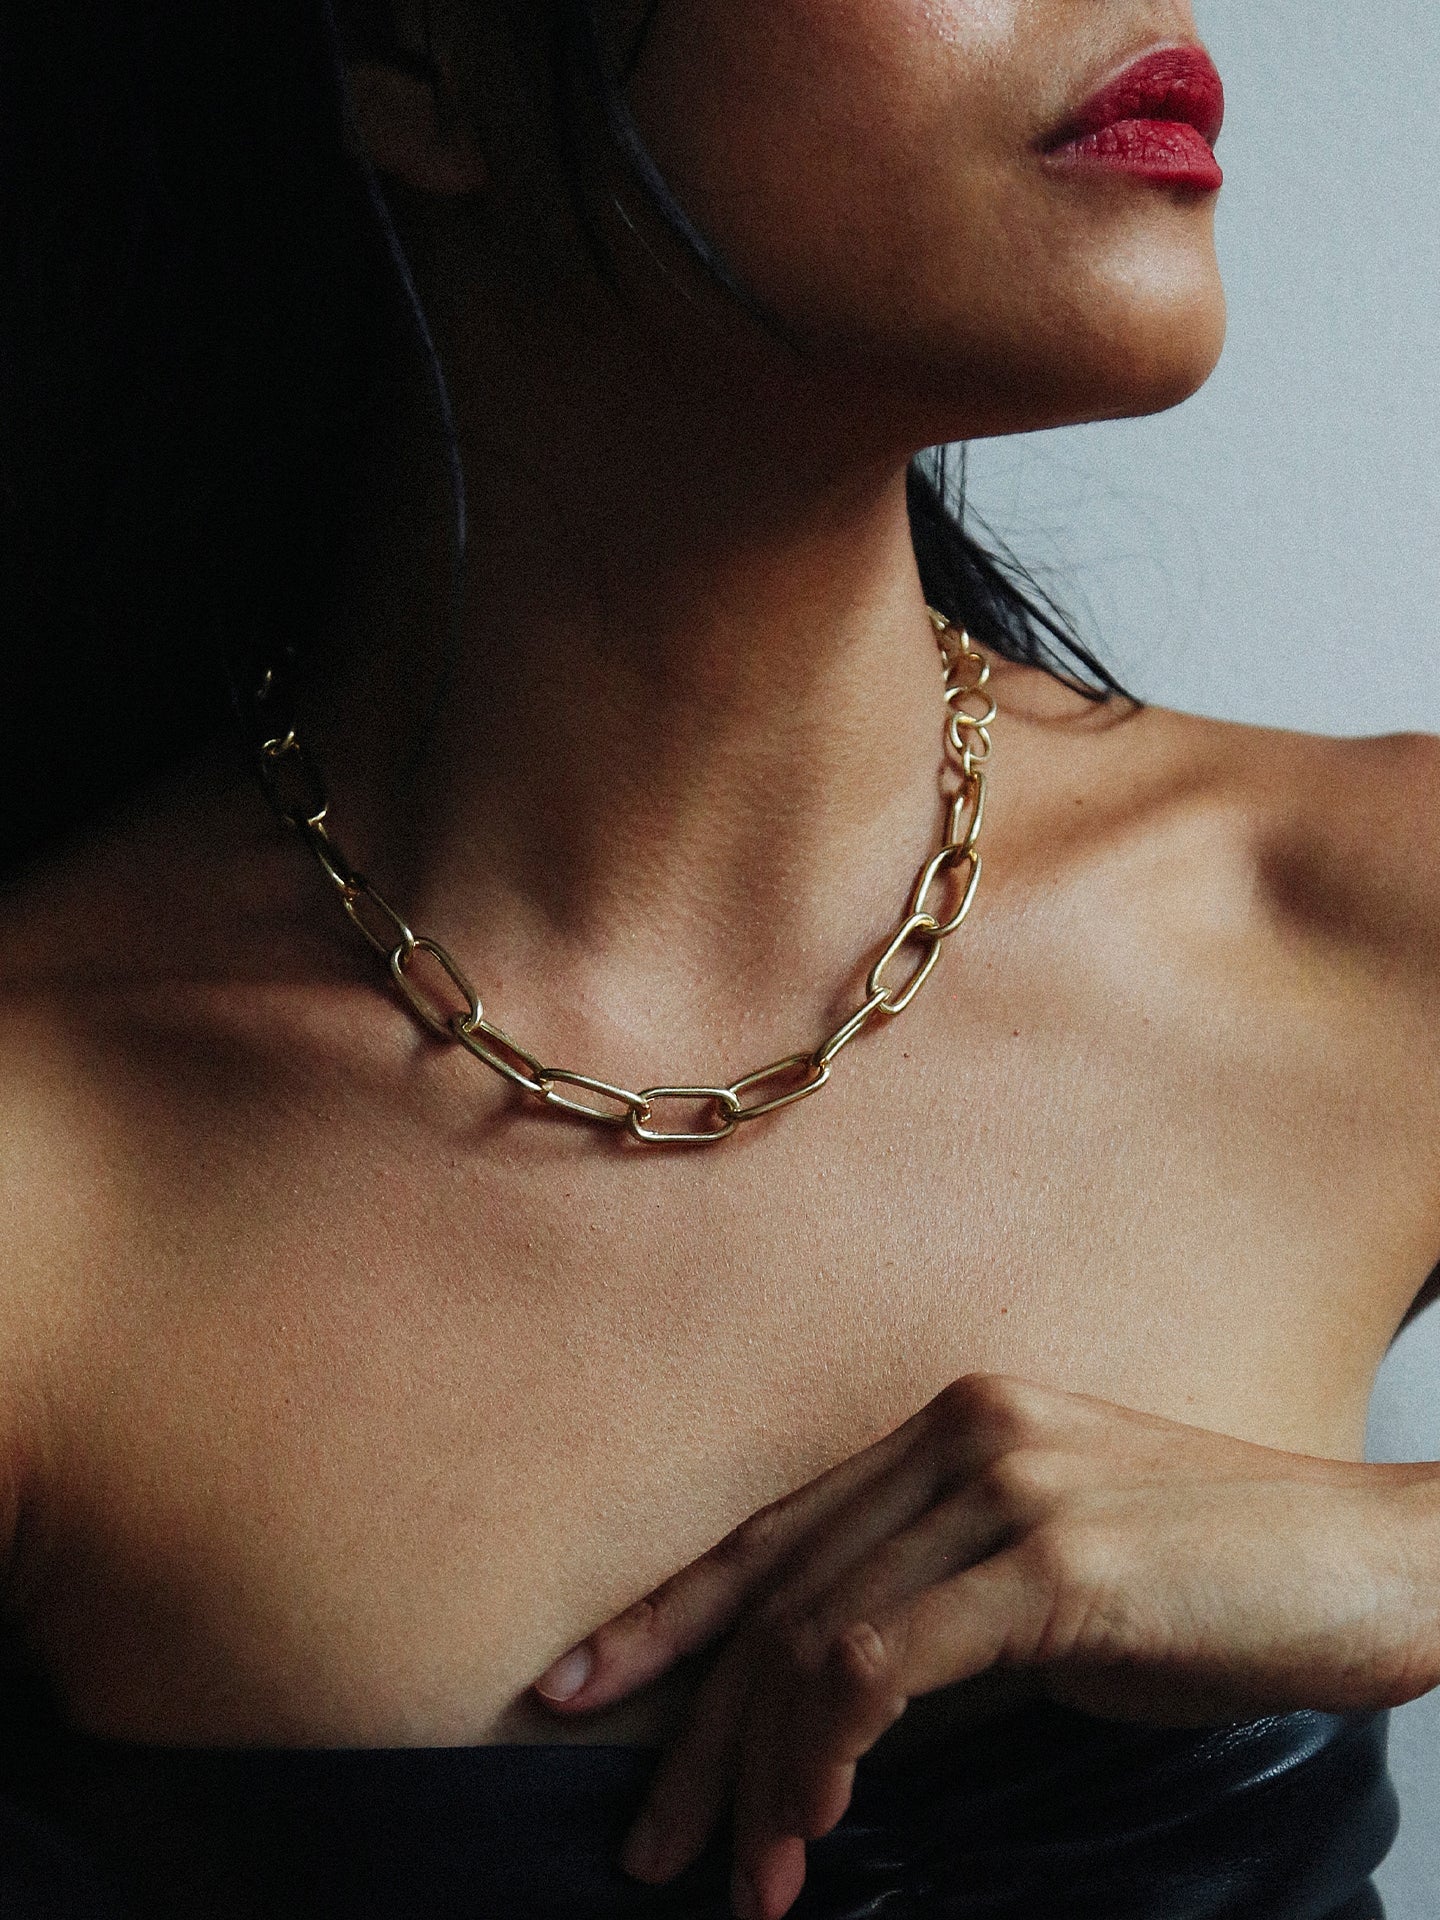 Padlock Pendant Necklace – Loren Stewart